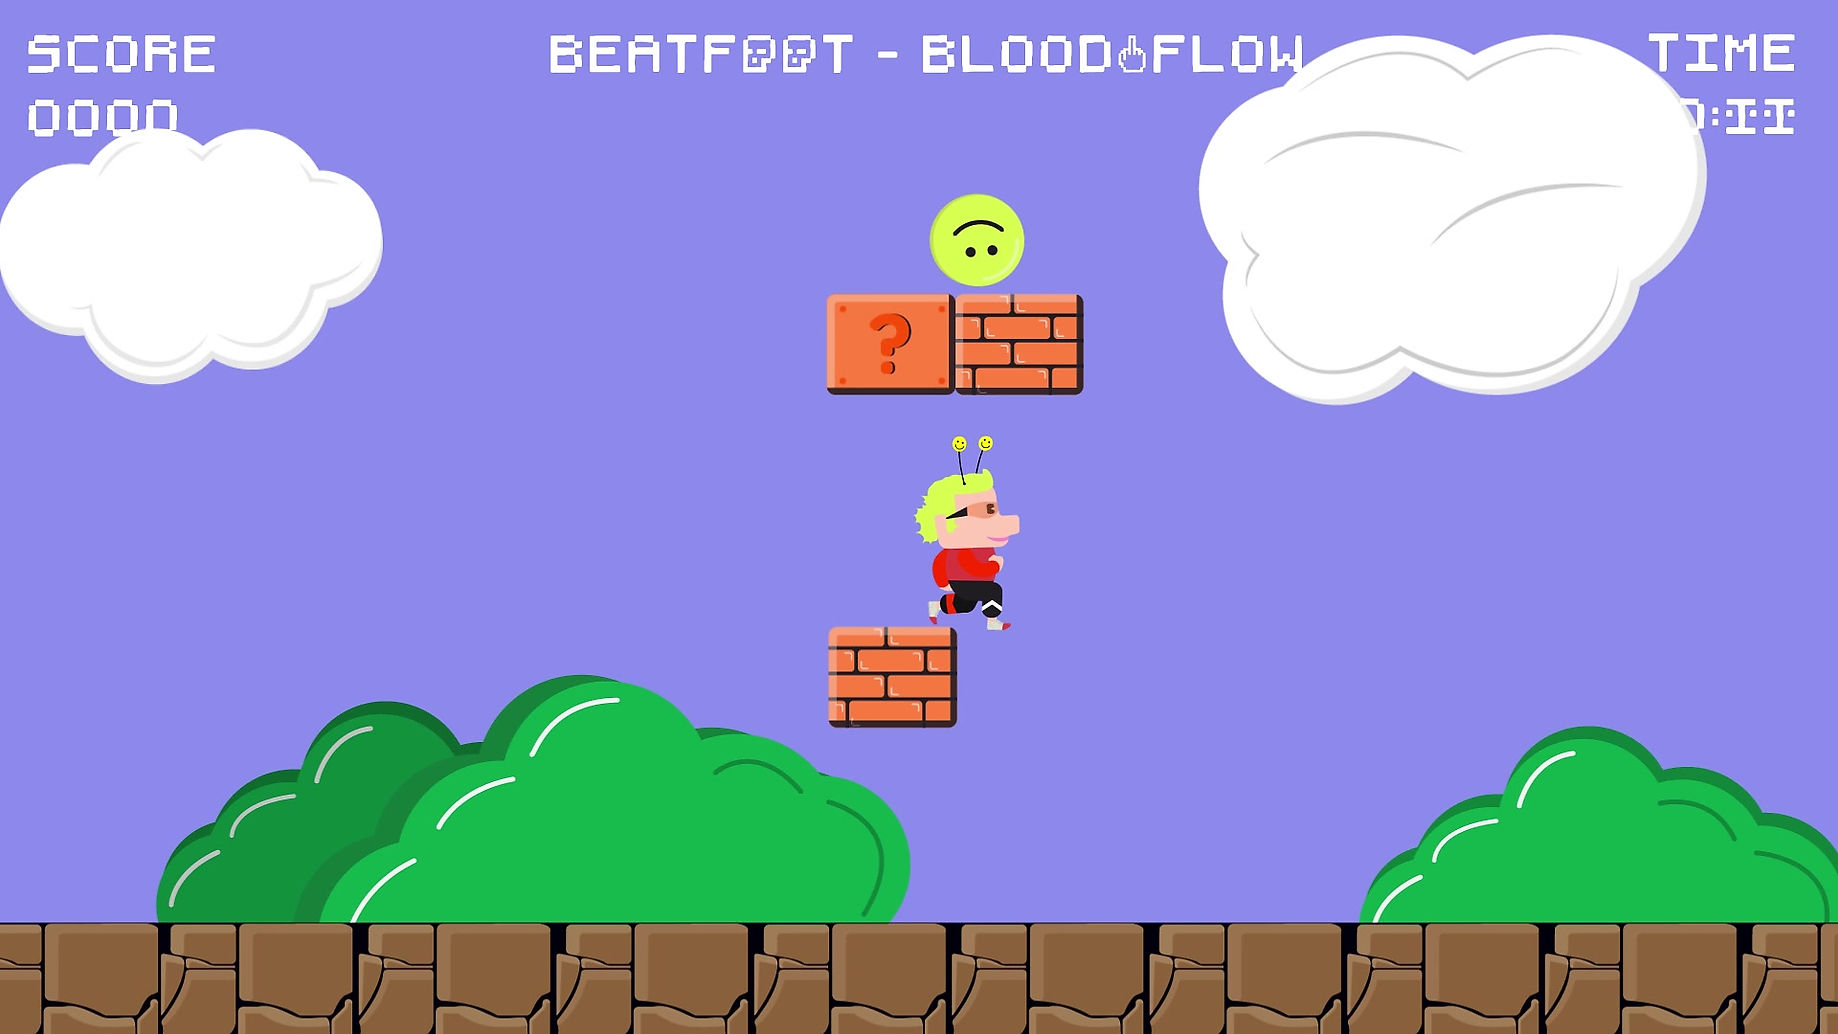 BEATFOOT- Blooddlow -